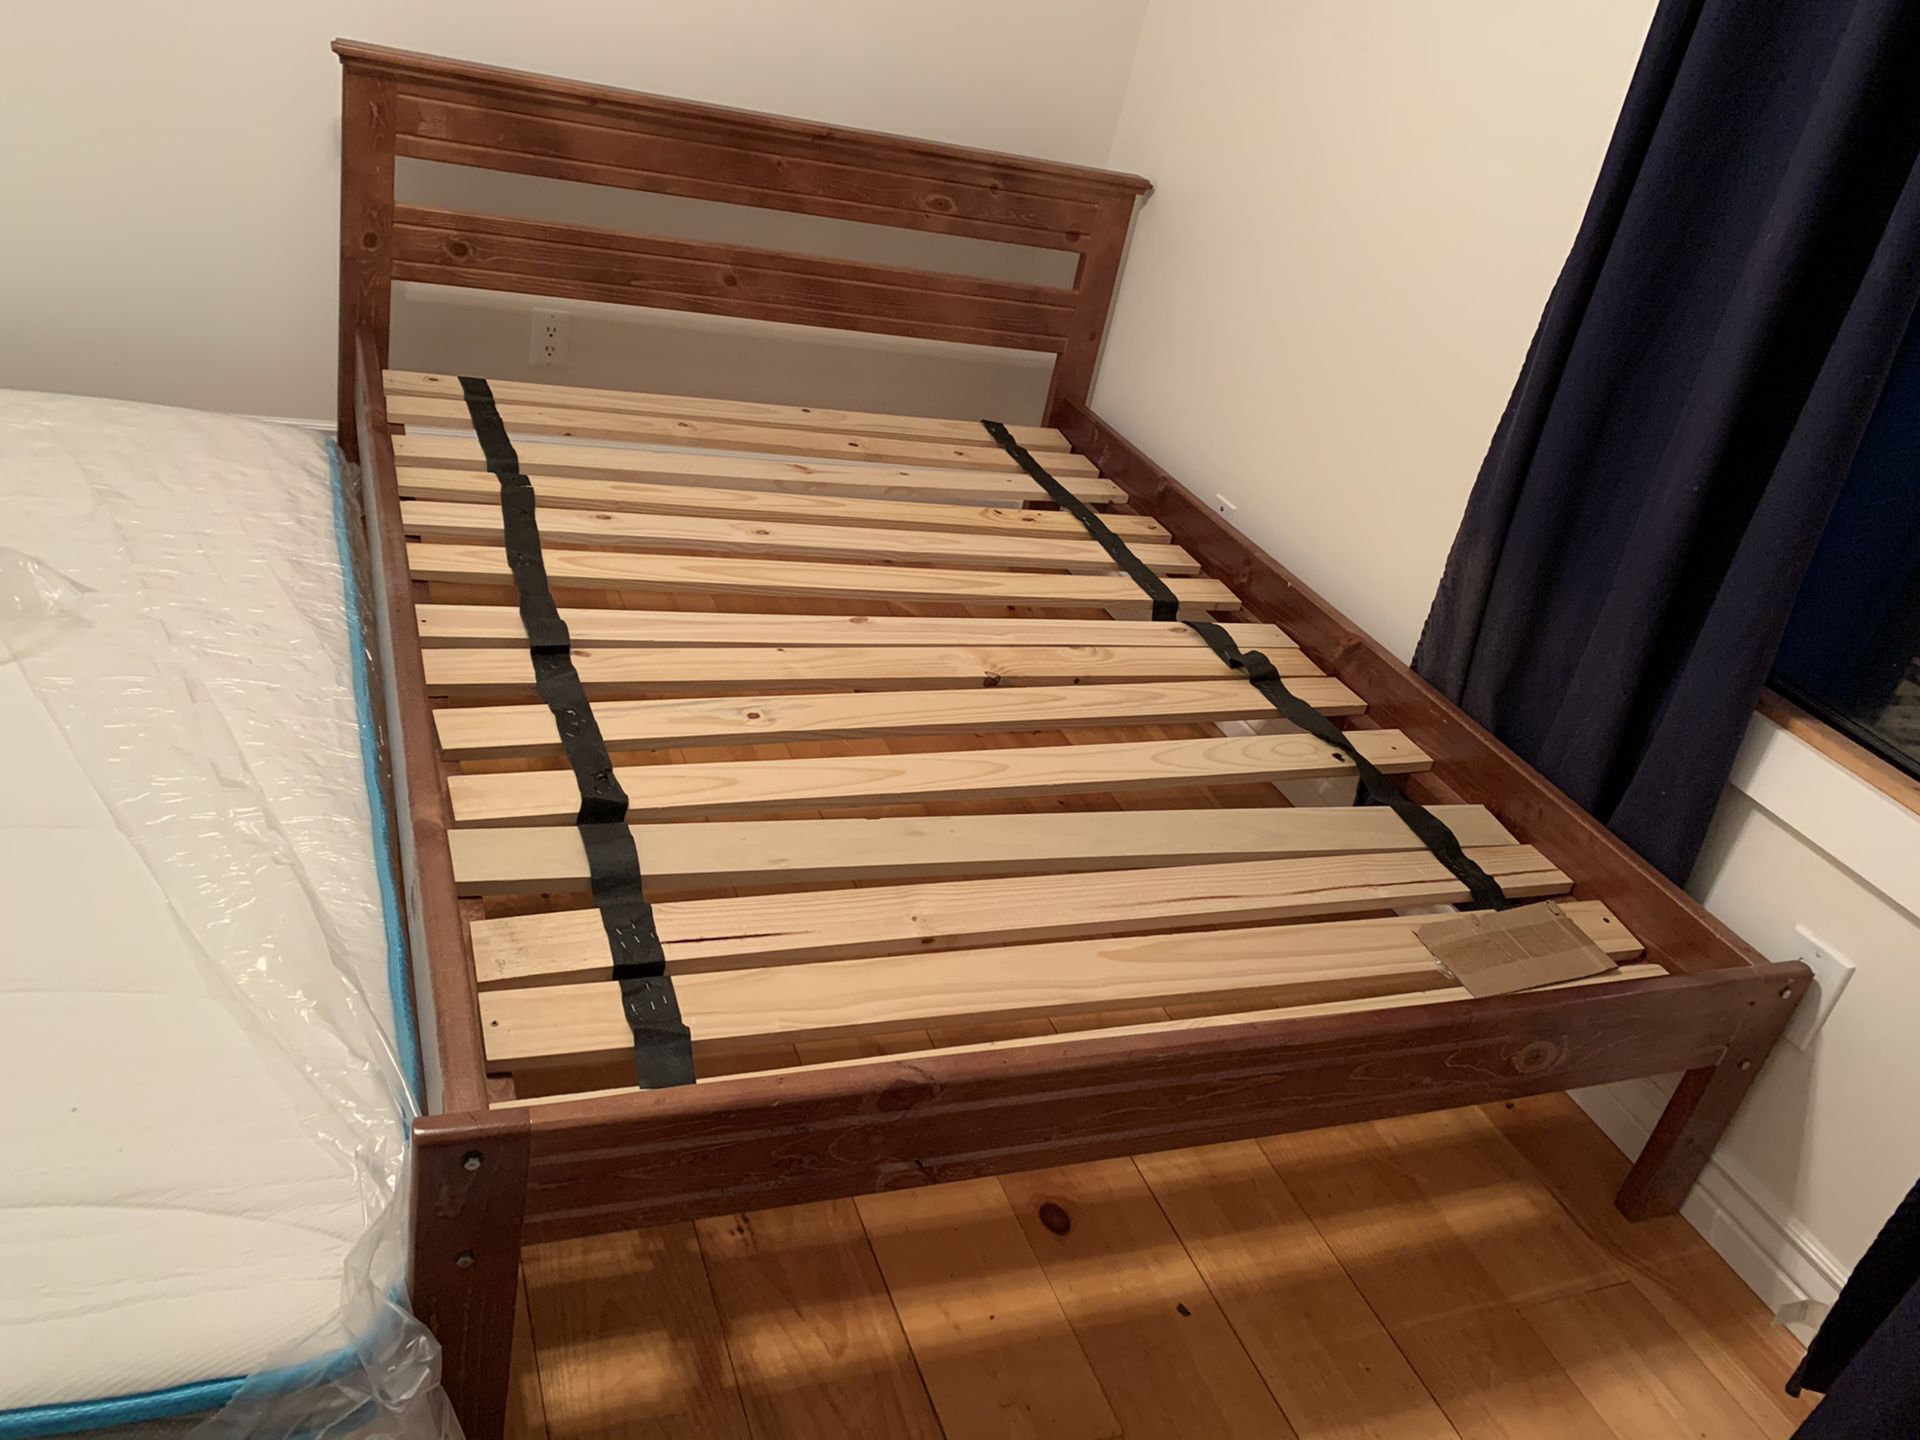 Full platform bed frame